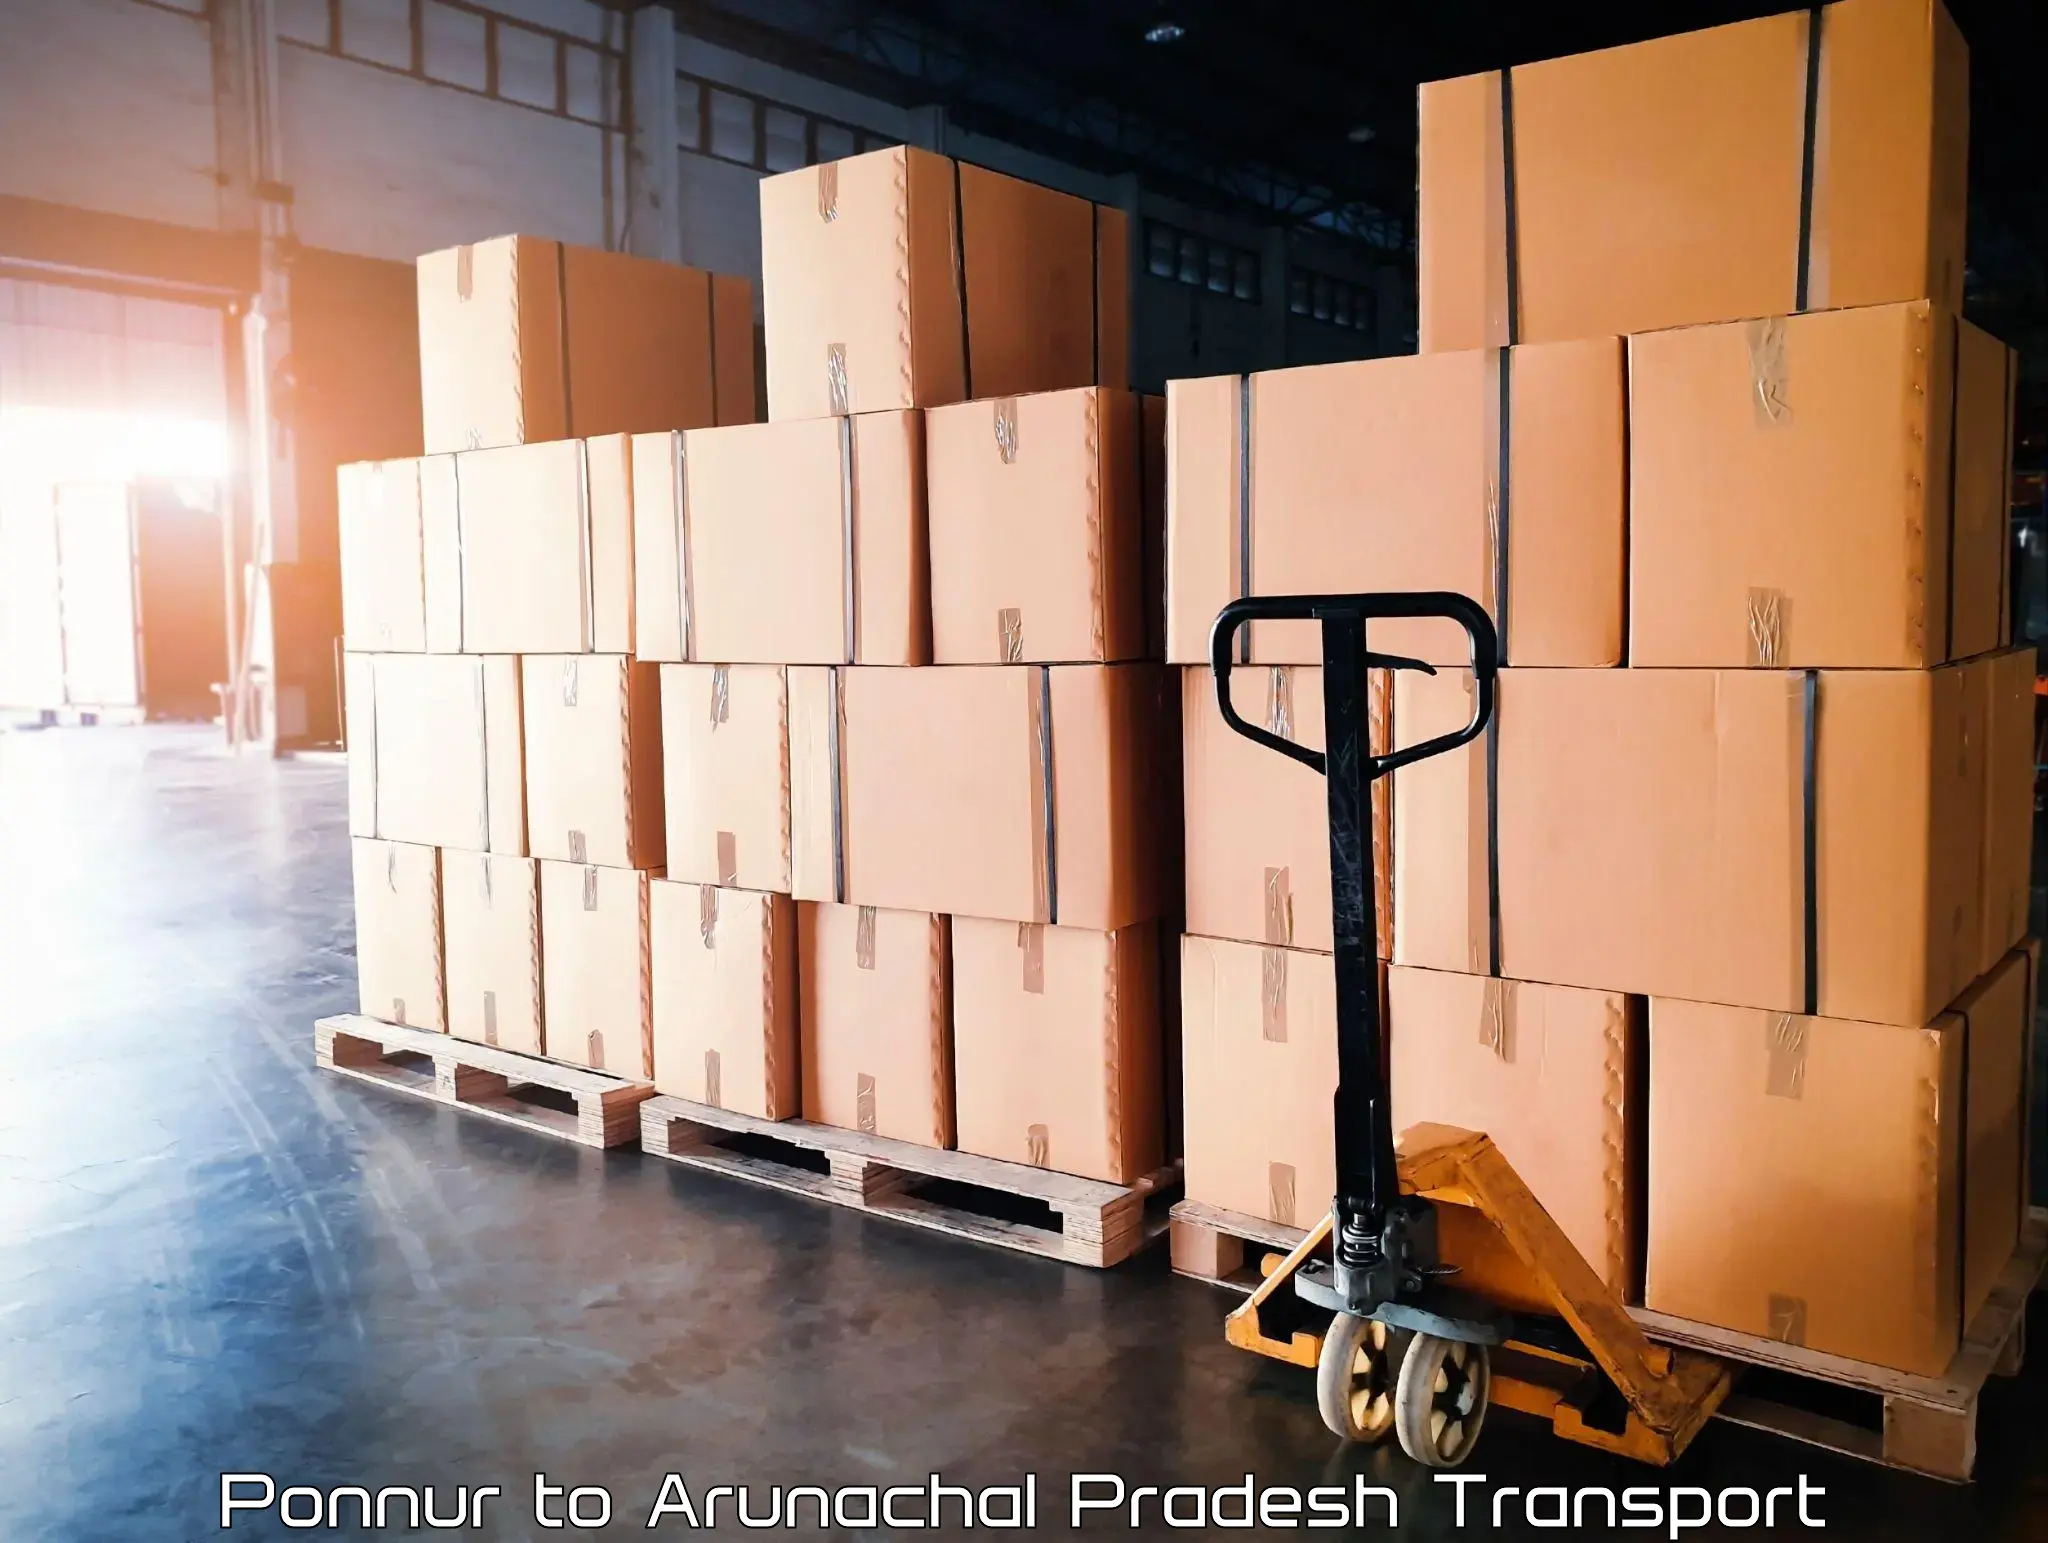 Daily parcel service transport in Ponnur to Arunachal Pradesh